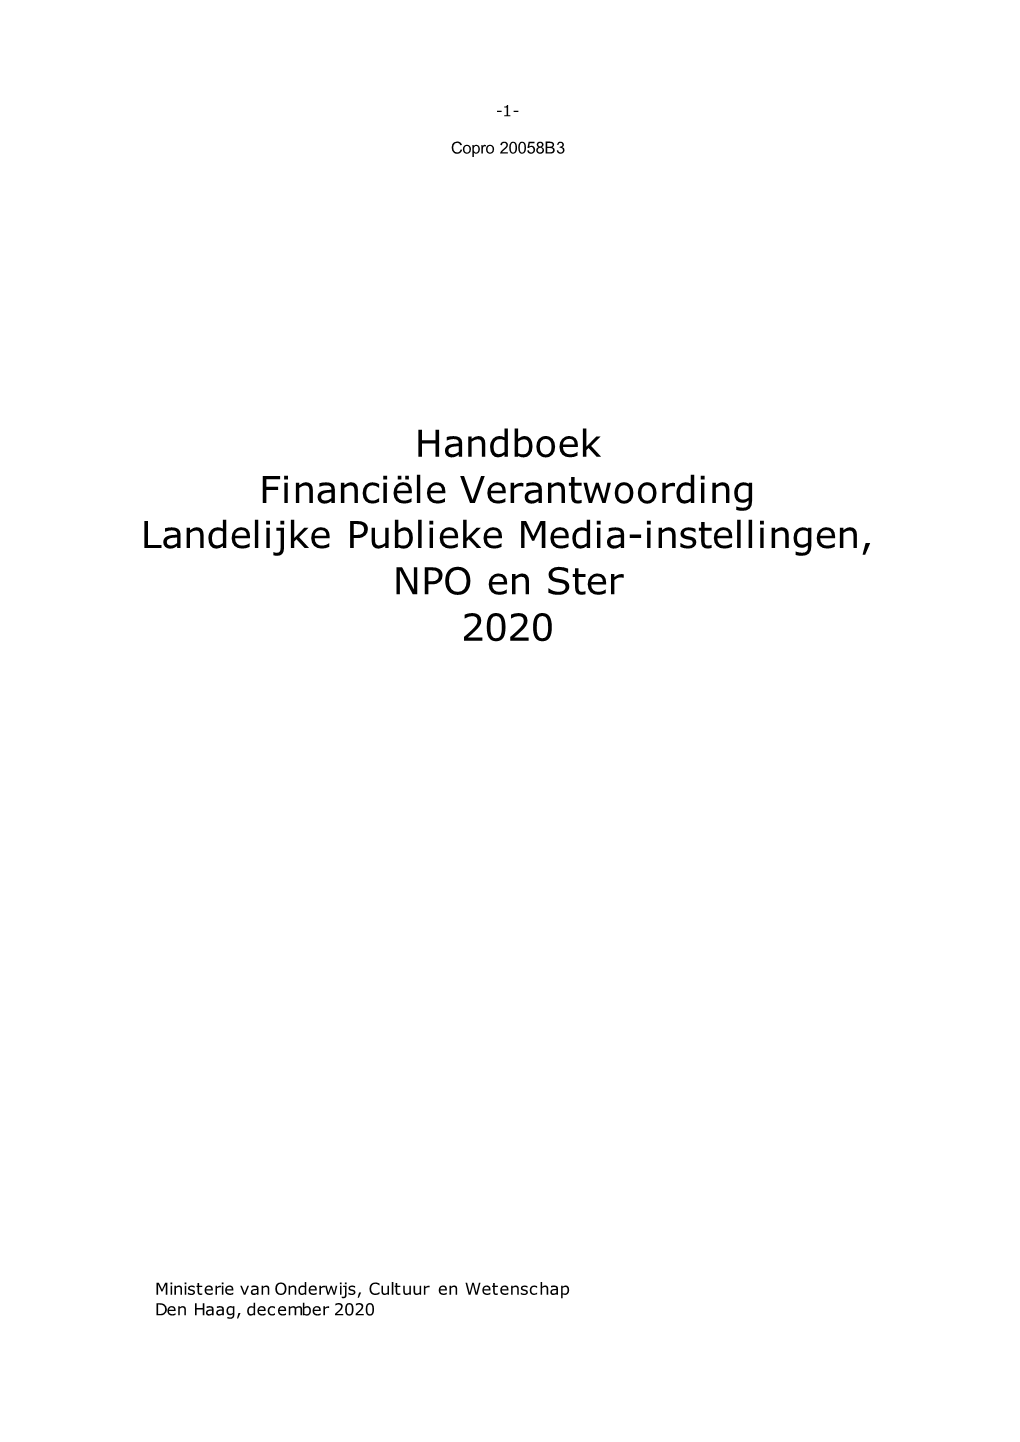 Handboek Financiële Verantwoording Landelijke Publieke Media-Instellingen, NPO En Ster 2020